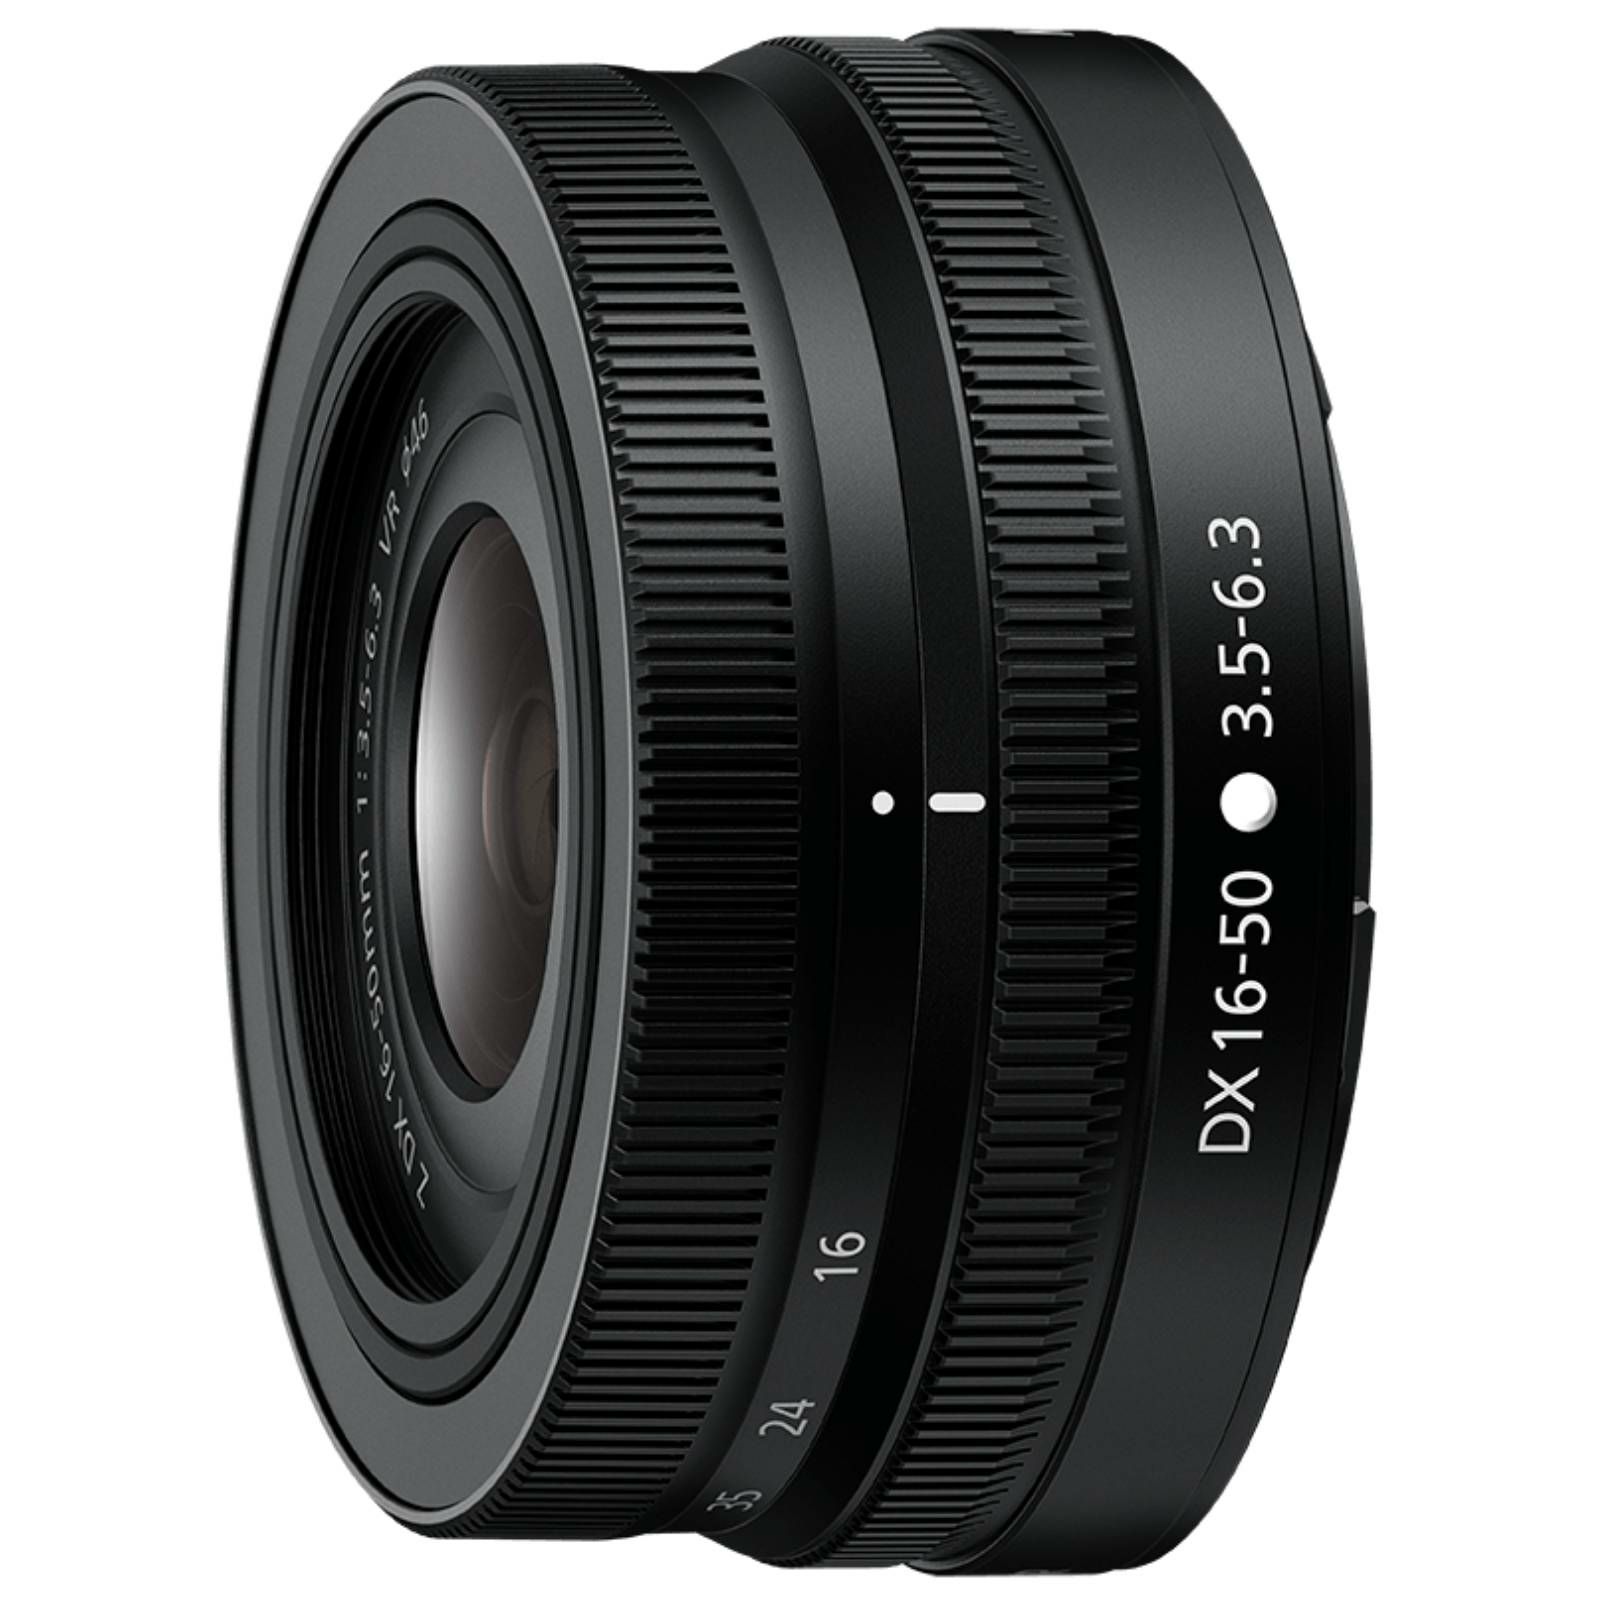 Nikon Z fc + 16-50 f/3.5-6.3 VR (BK) + 50-250 f/4.5-6.3 VR Double zoom lens kit Black (VOA090KB03)